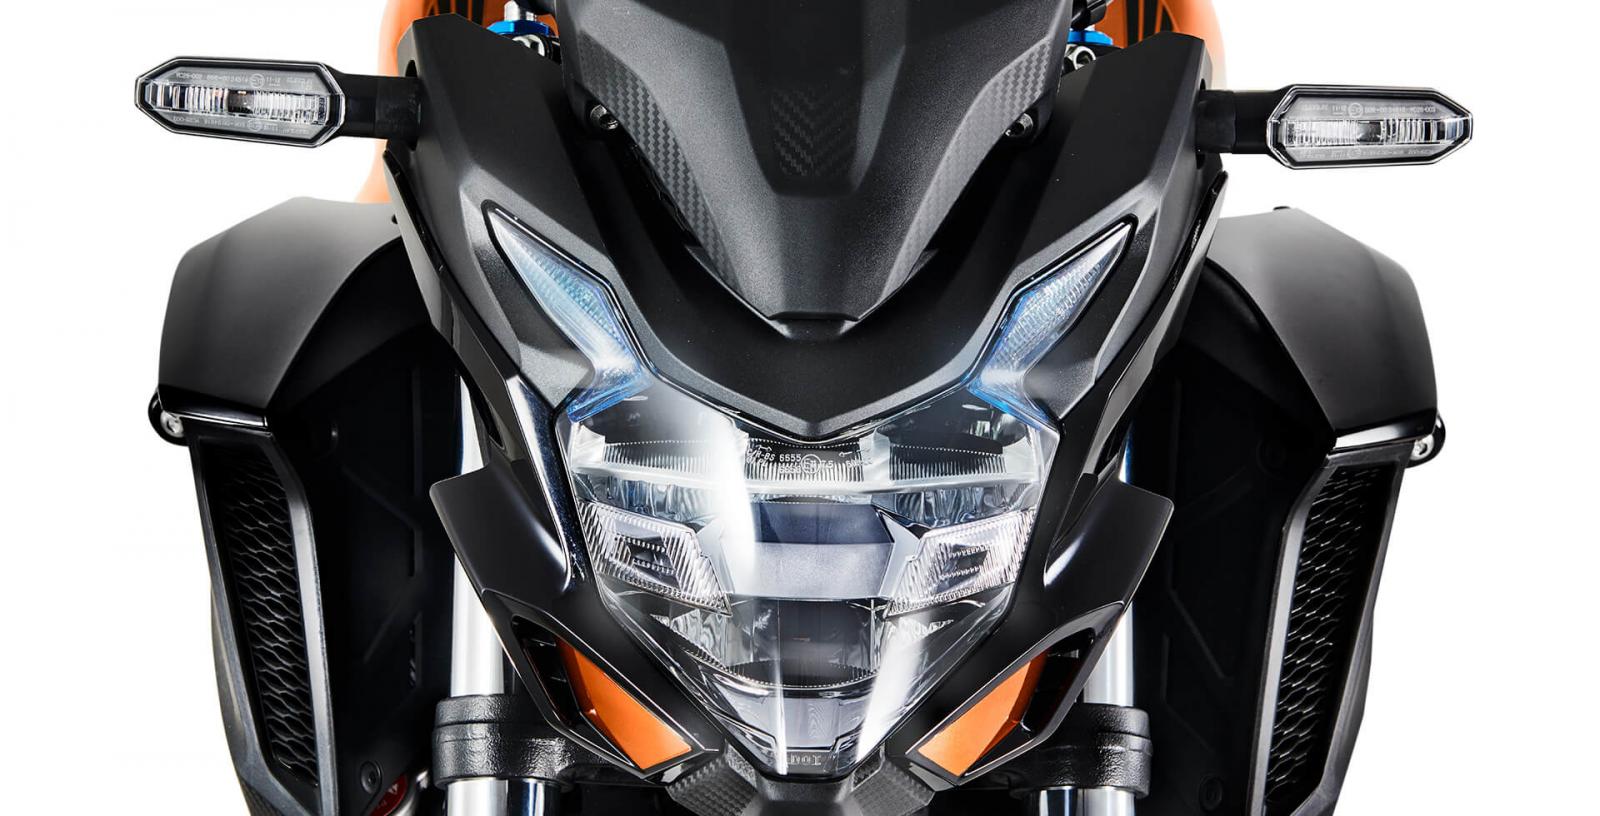 Honda CB500F 2020